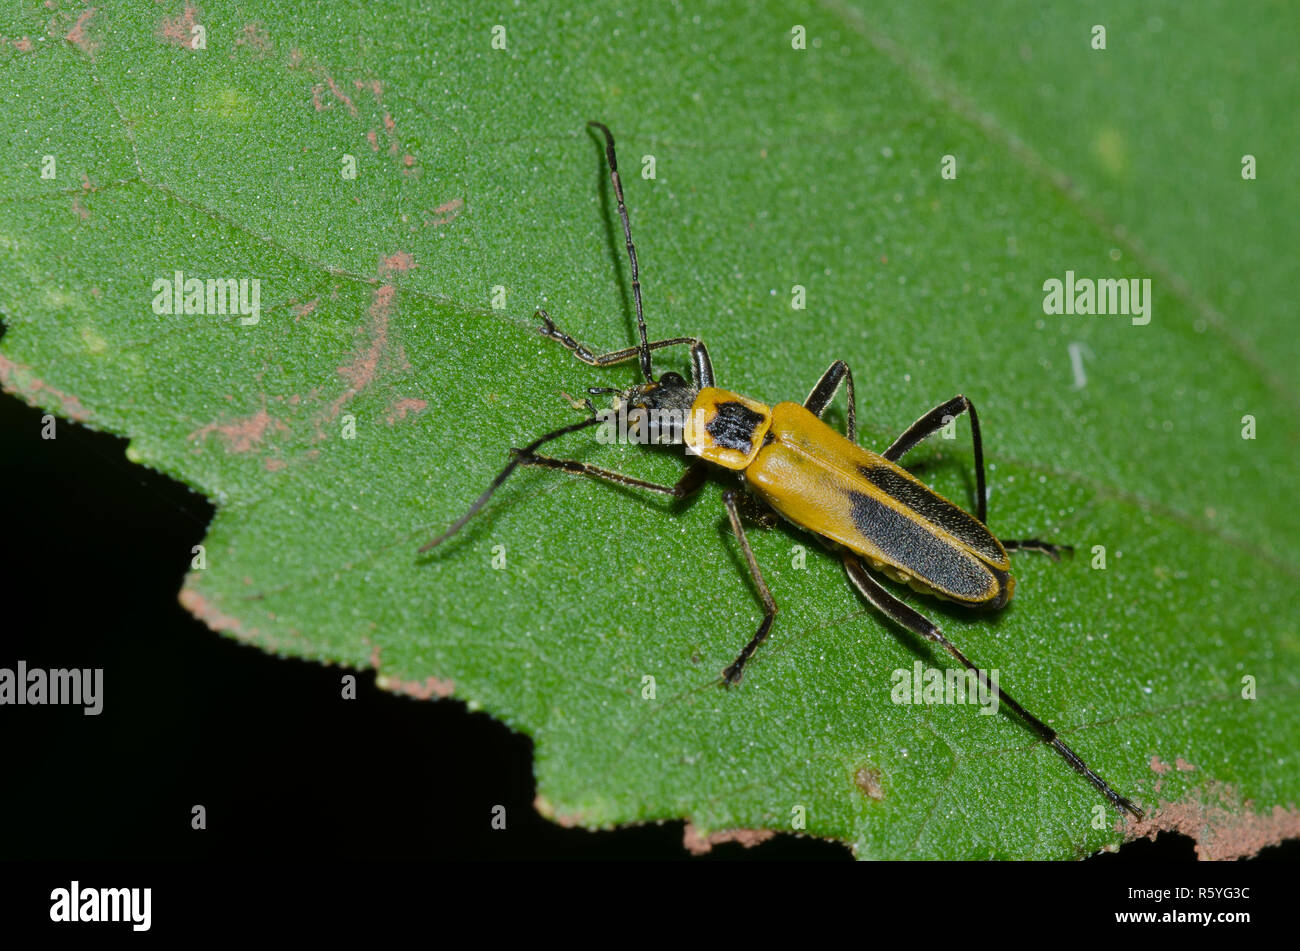 Houghton, Chauliognathus pensylvanicus Soldat Beetle Banque D'Images